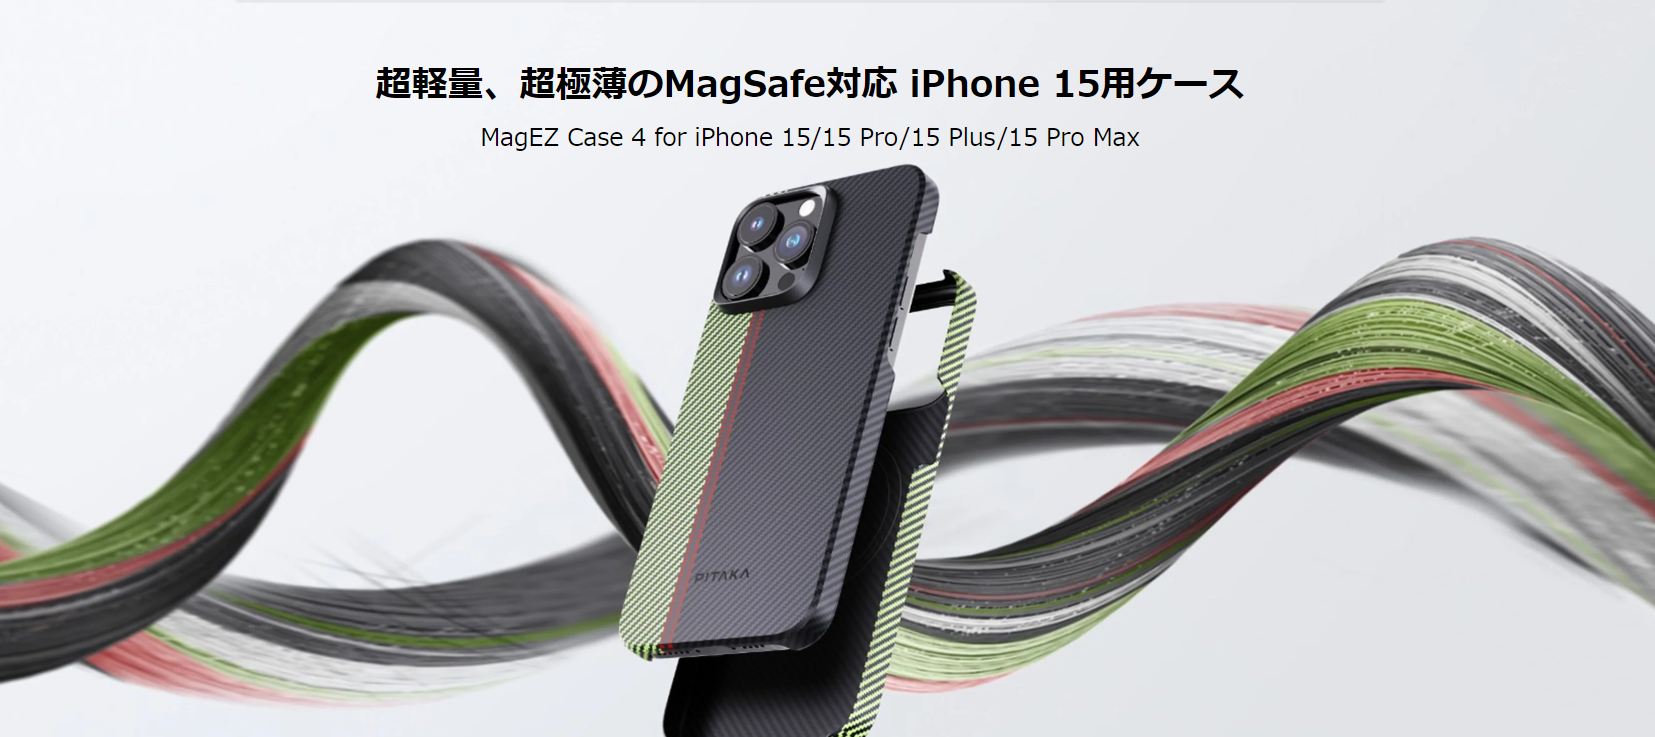 アラミド繊維を活用した超極薄/超軽量のMagSafe対応iPhone15用